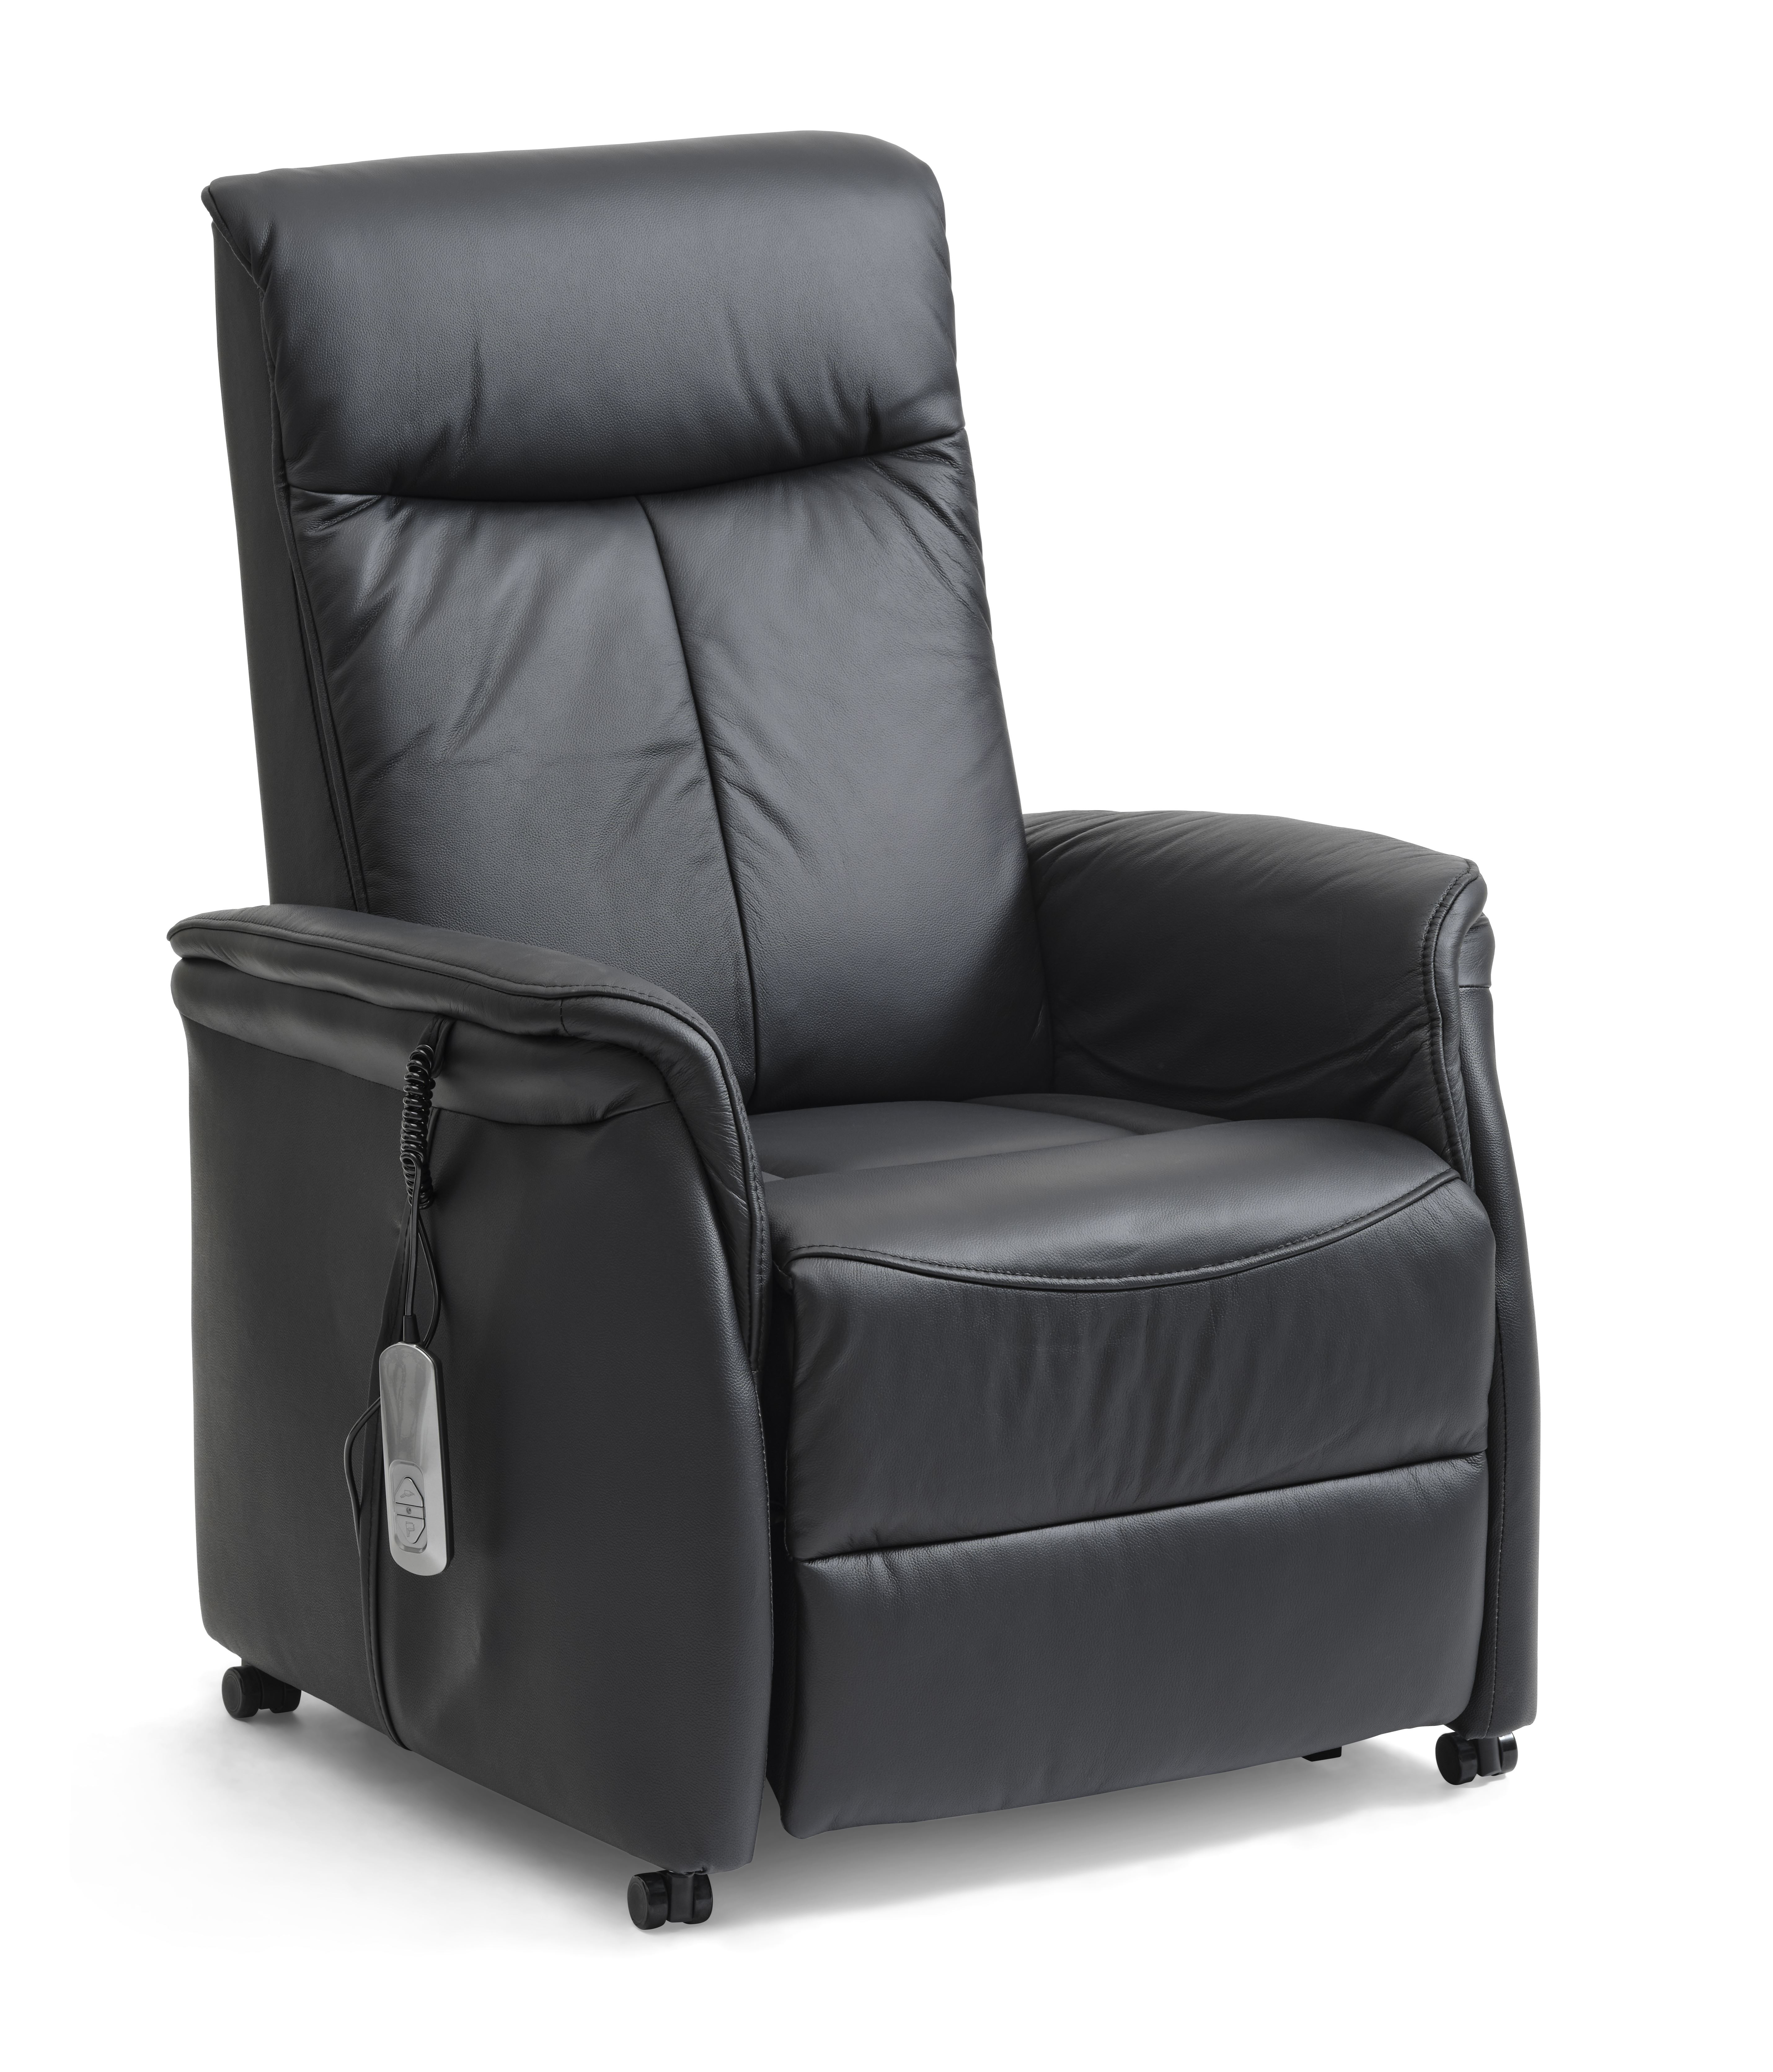 Victor recliner stol, m. 1 motor, sædeløft, vippefunktion, skammel, armlæn, hjul - sort læder/PVC